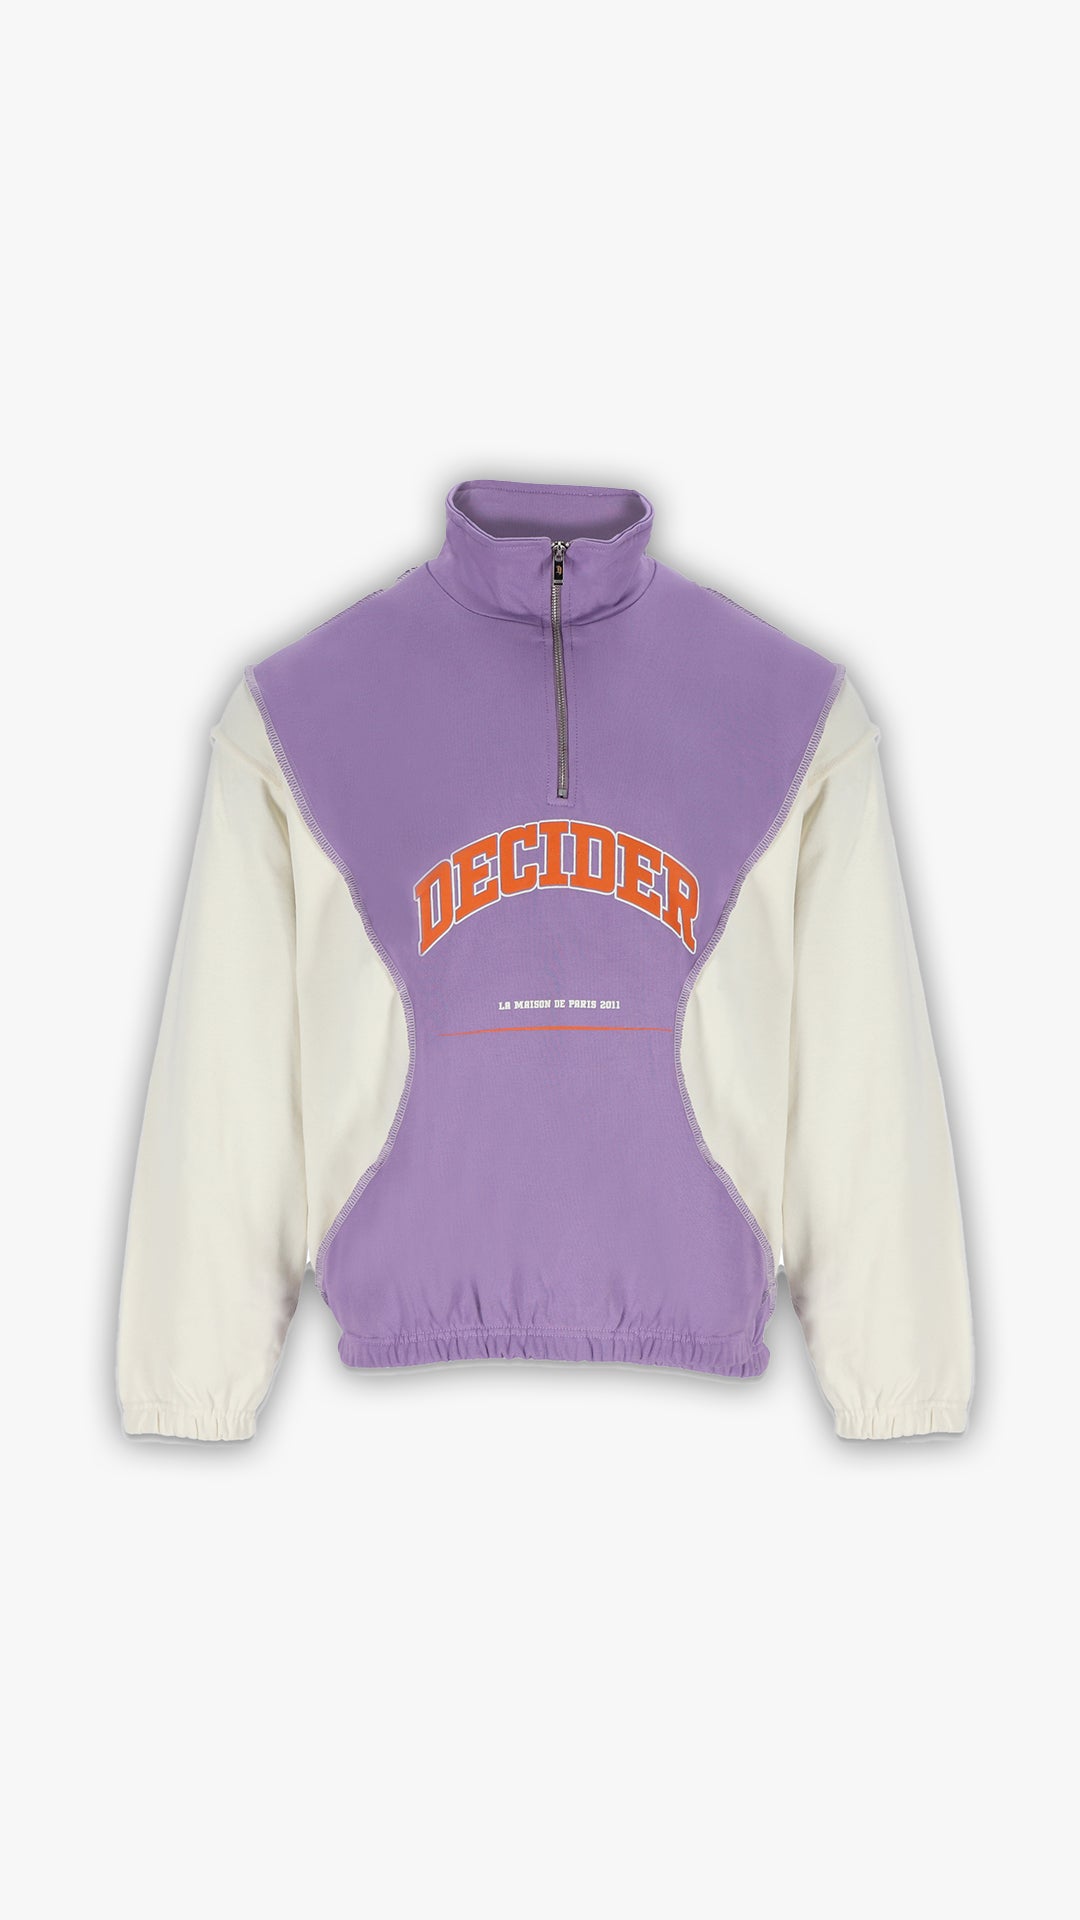 Decider half zip Hoodie in Lila und cream, trendiges Oversized-Design, Logo in Orange, für Street-Style Fashion